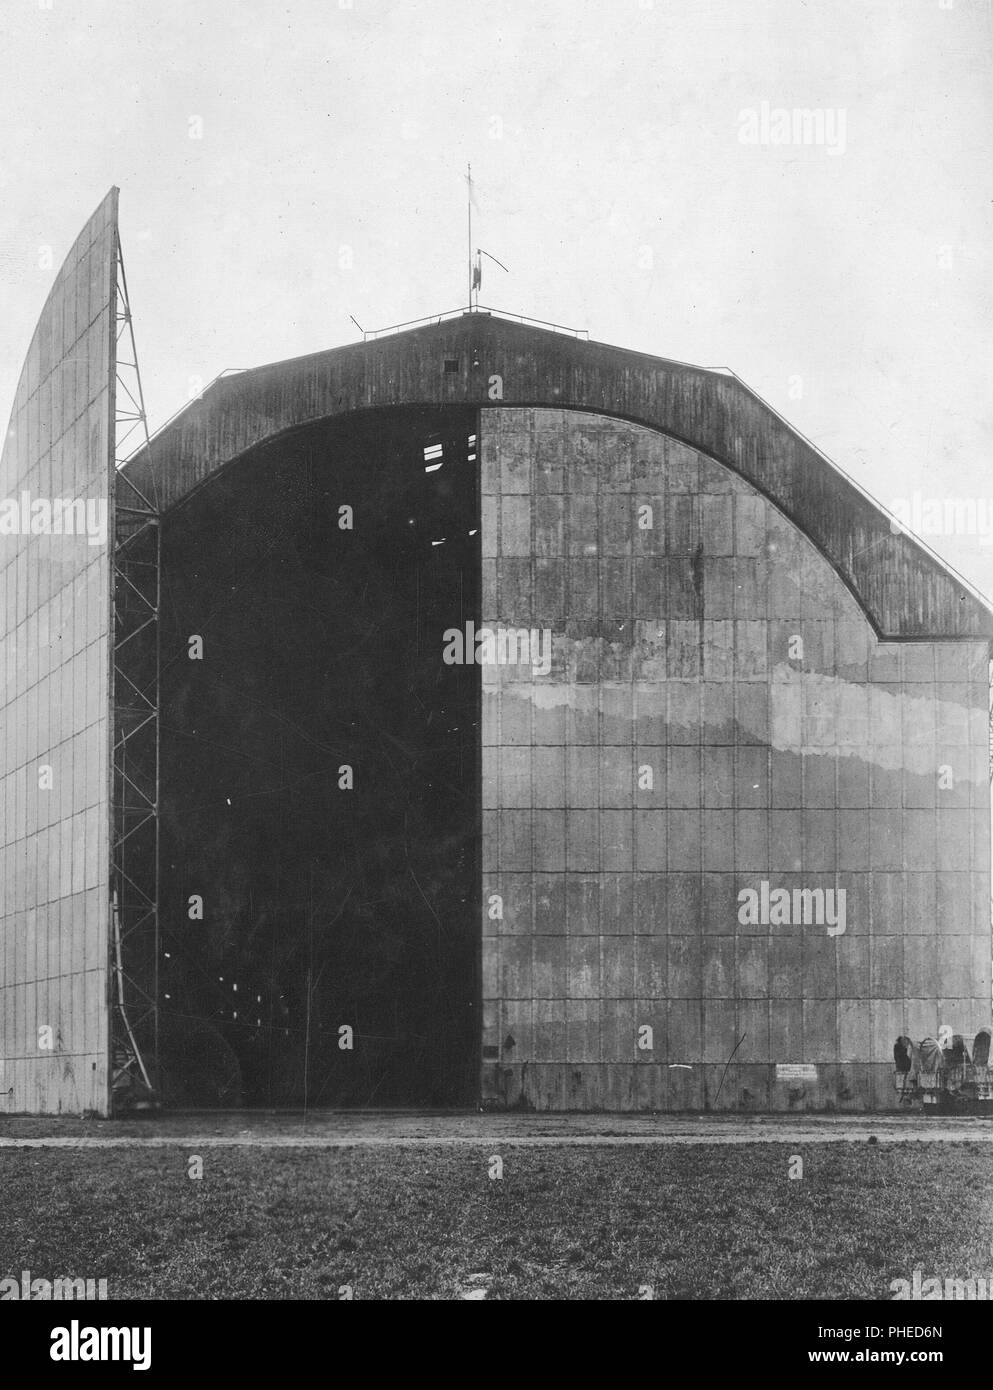 1919 - der Besatzungsarmee - Trier, Deutschland, dem Sitz der amerikanischen Besatzungstruppen. Eingang der Zeppelin Hangar. Es ist eine der größten der Welt. Beachten Sie enorme Größe der Stahltür Stockfoto